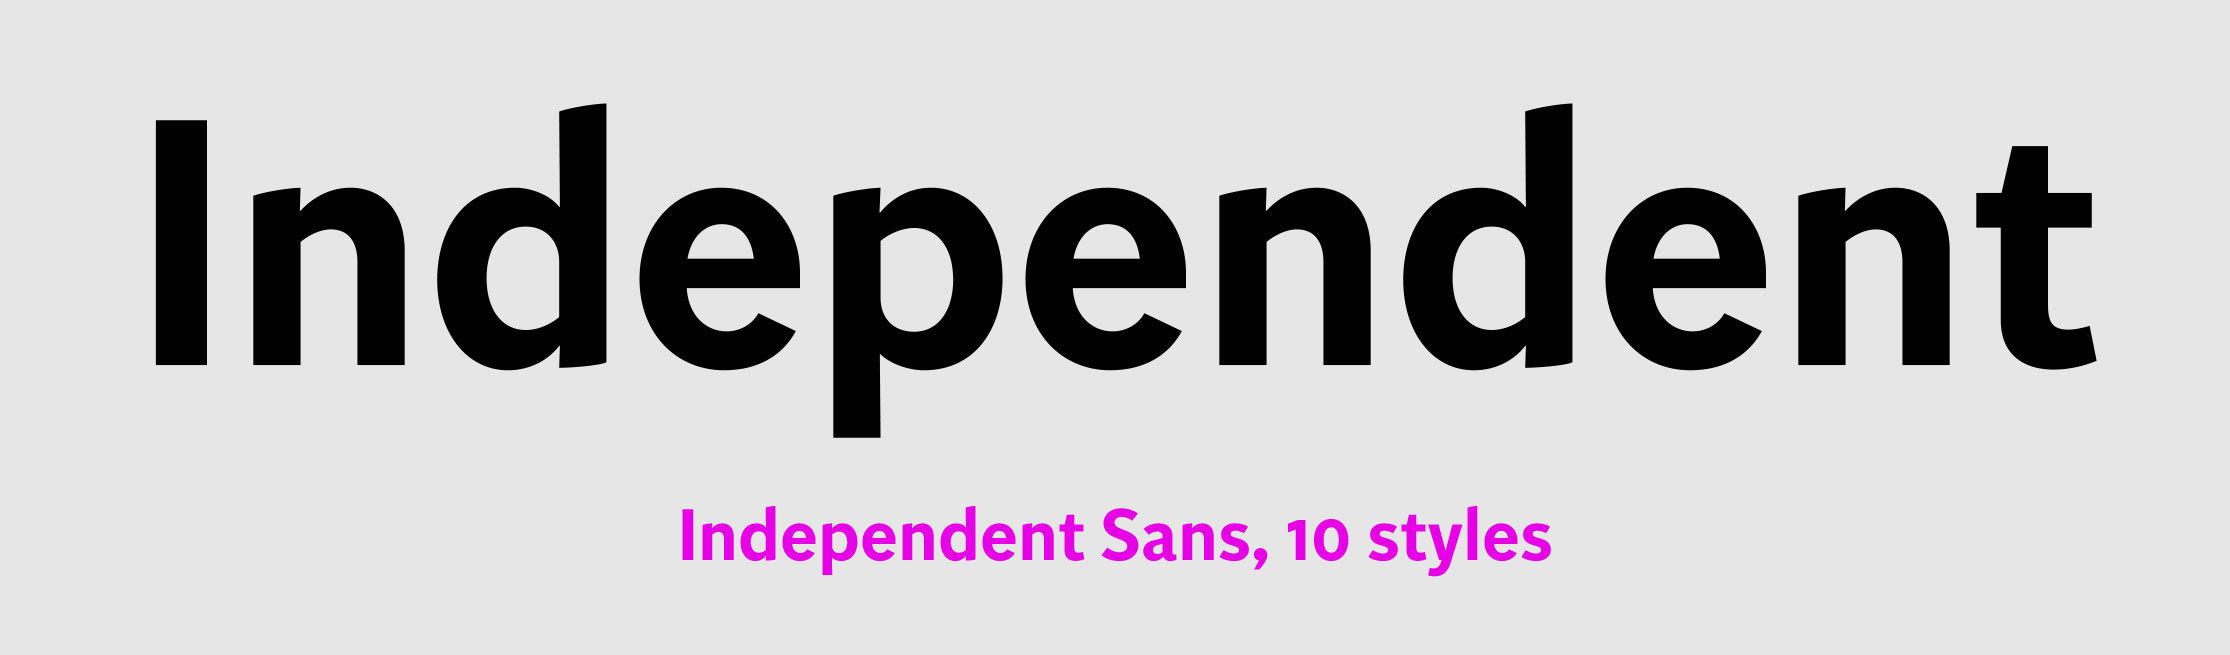 Independent Sans sample